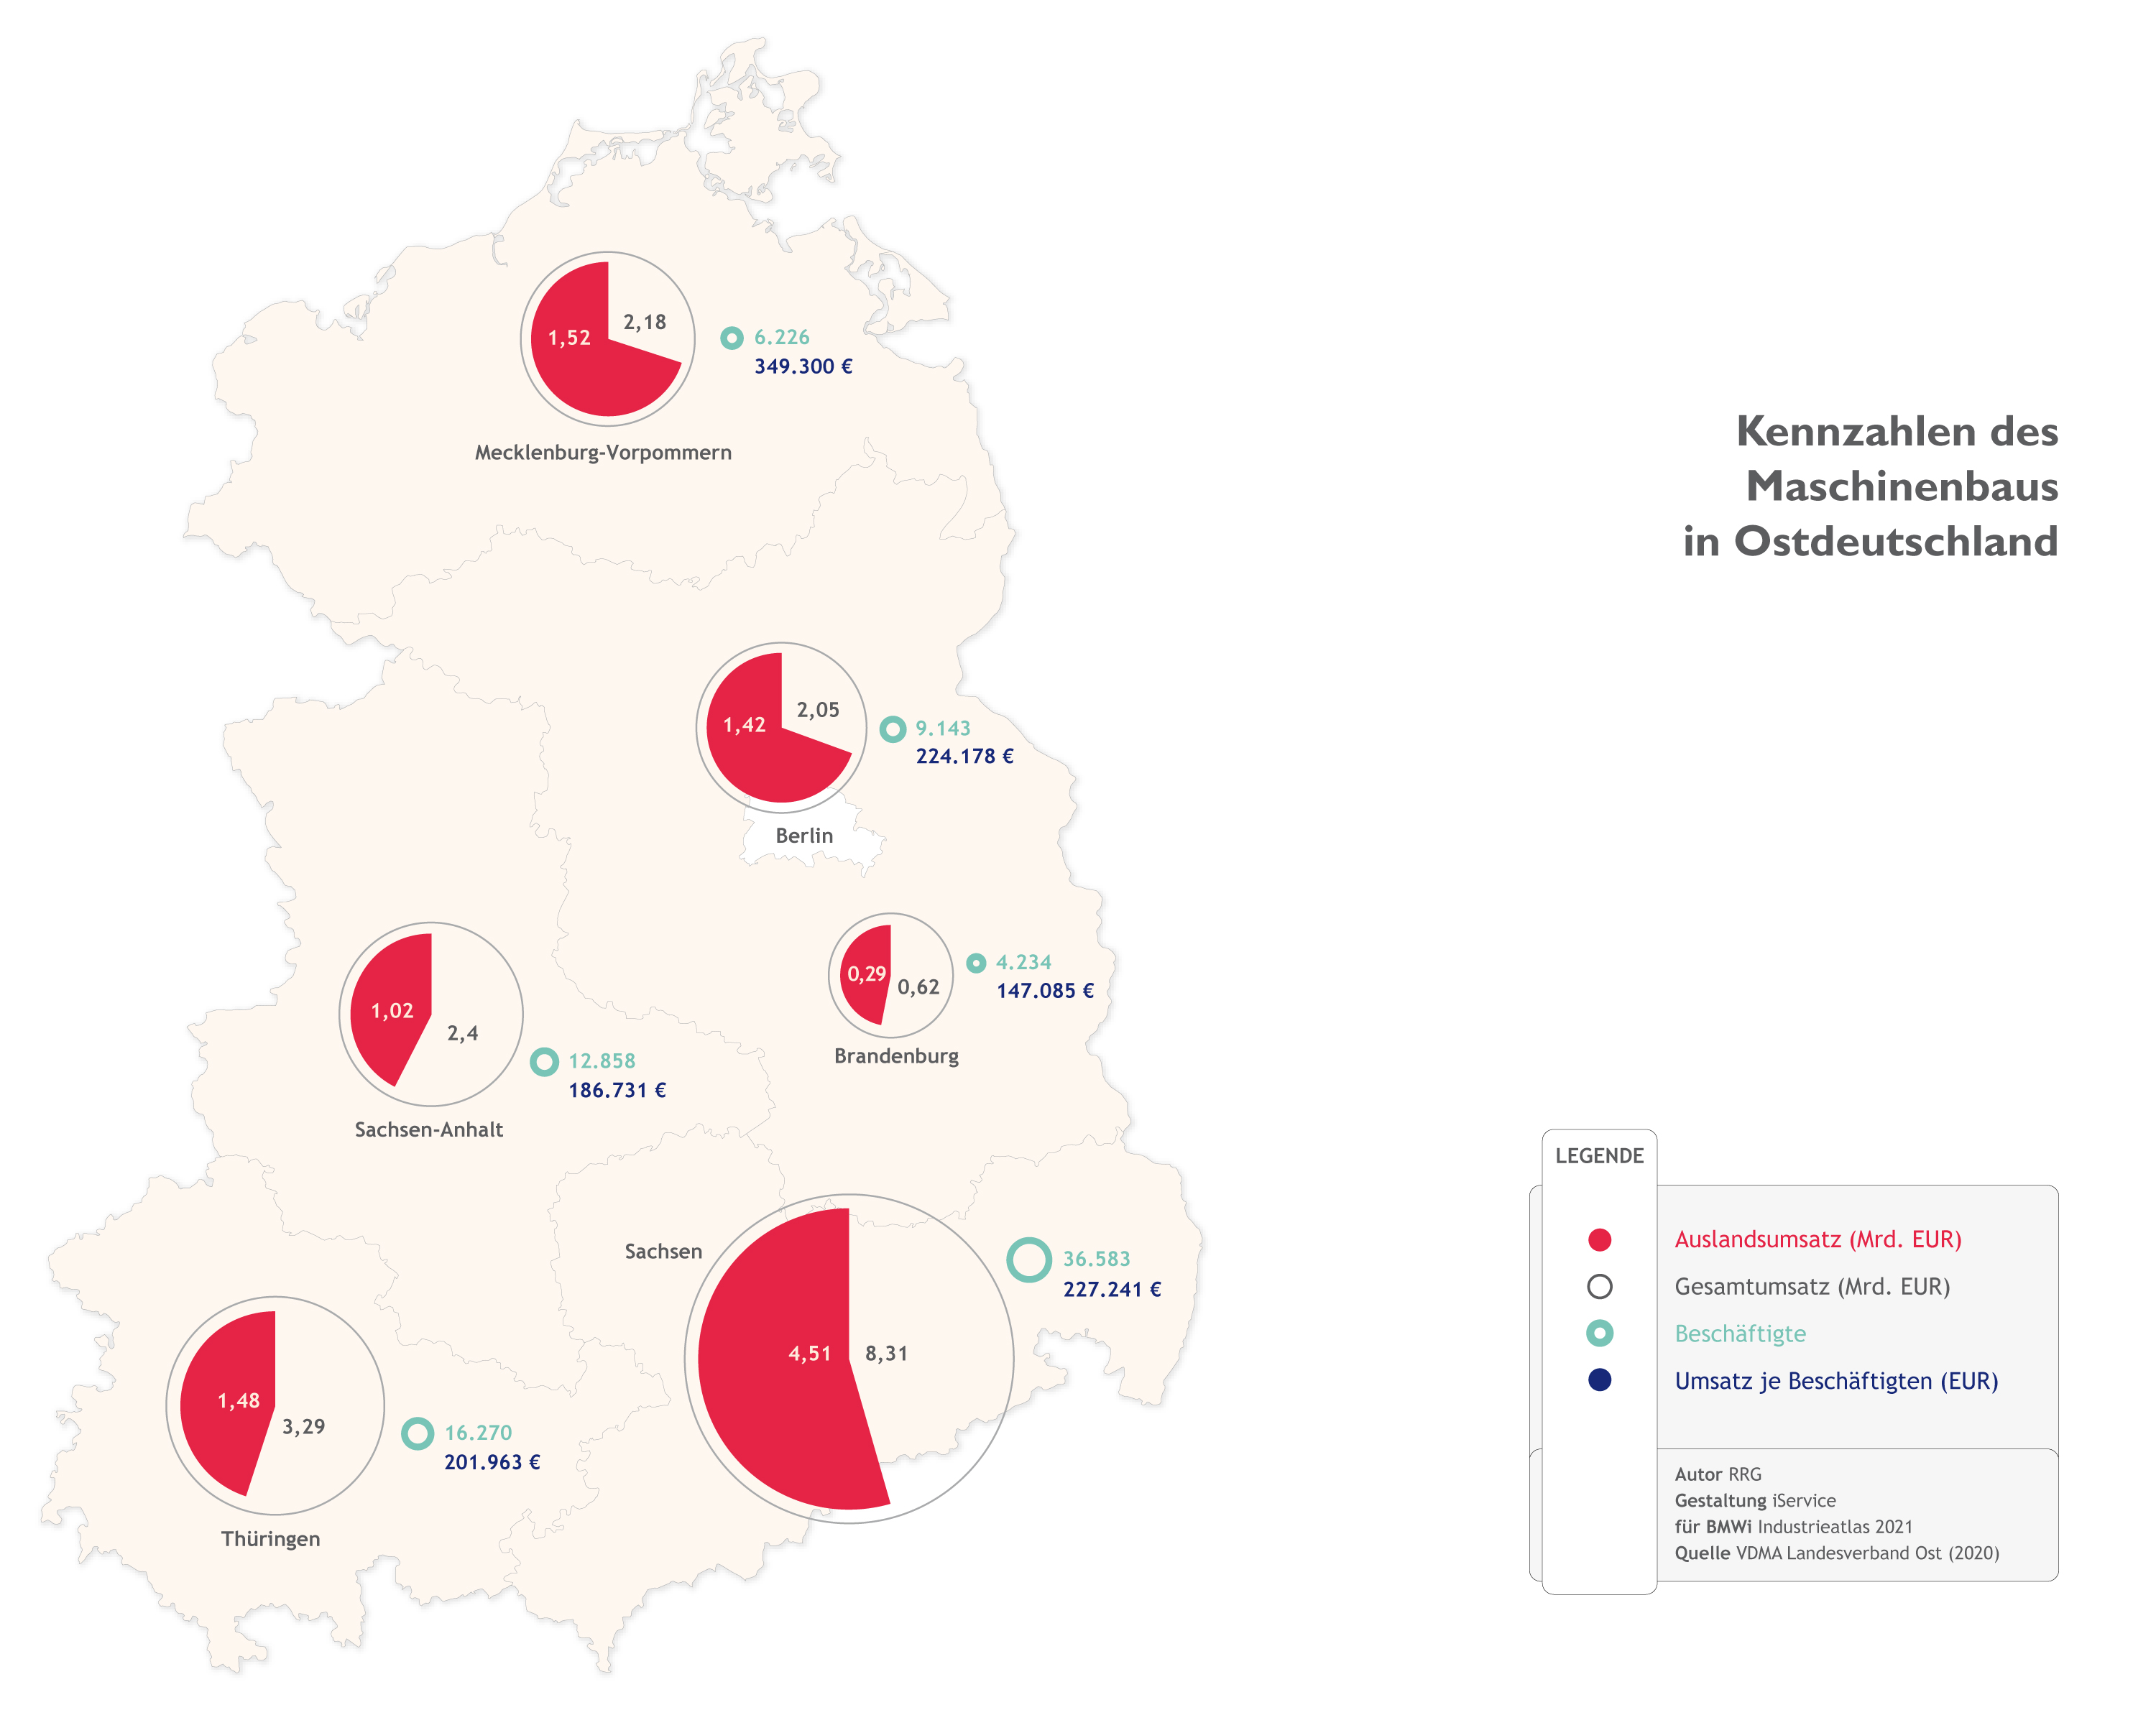 Kennzahlen des Maschinenbaus in Ostdeutschland